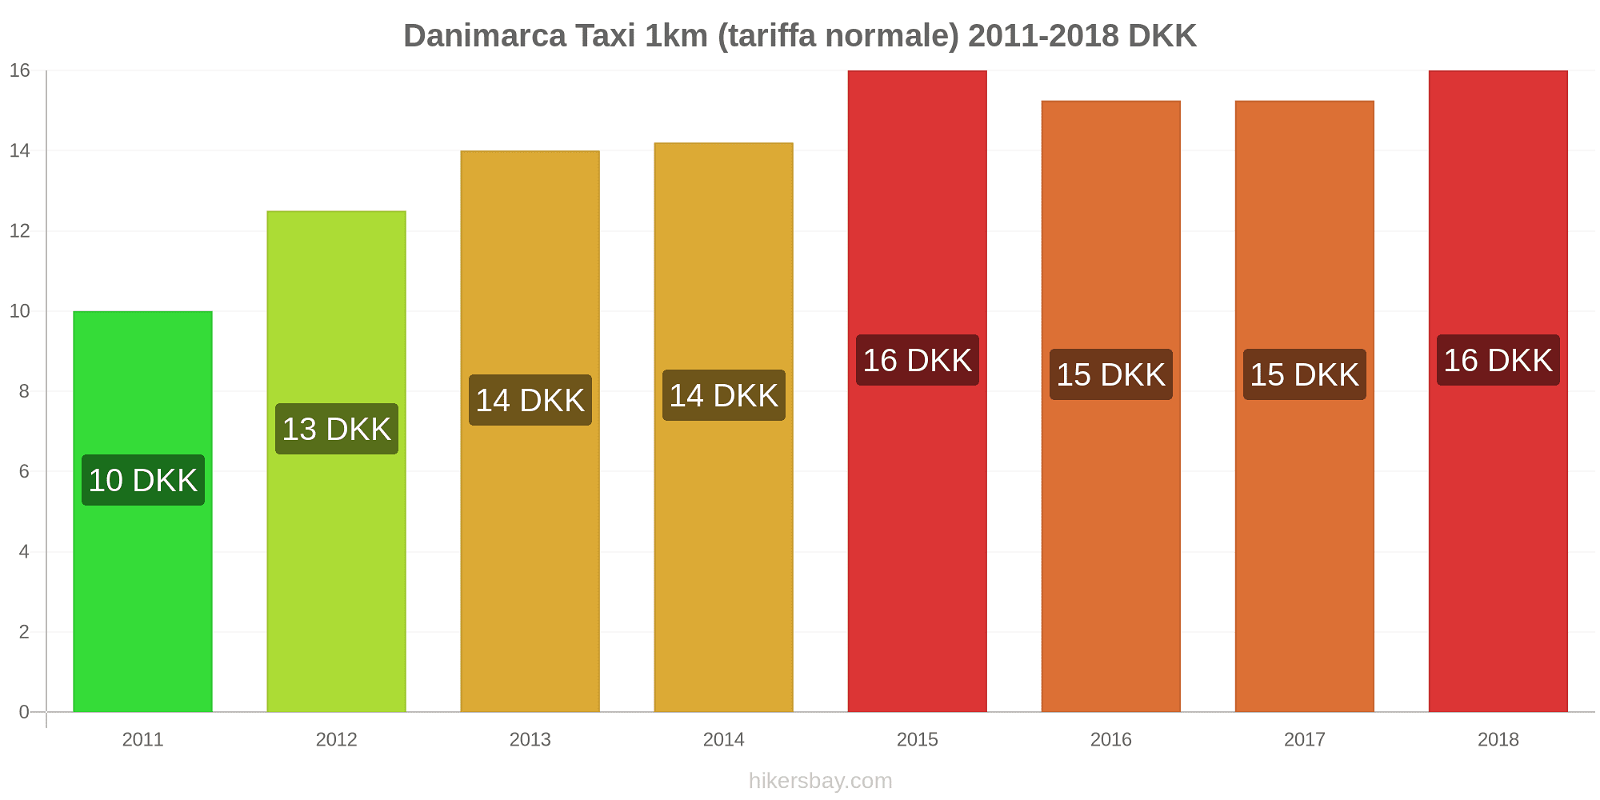 Danimarca cambi di prezzo Taxi 1km (tariffa normale) hikersbay.com